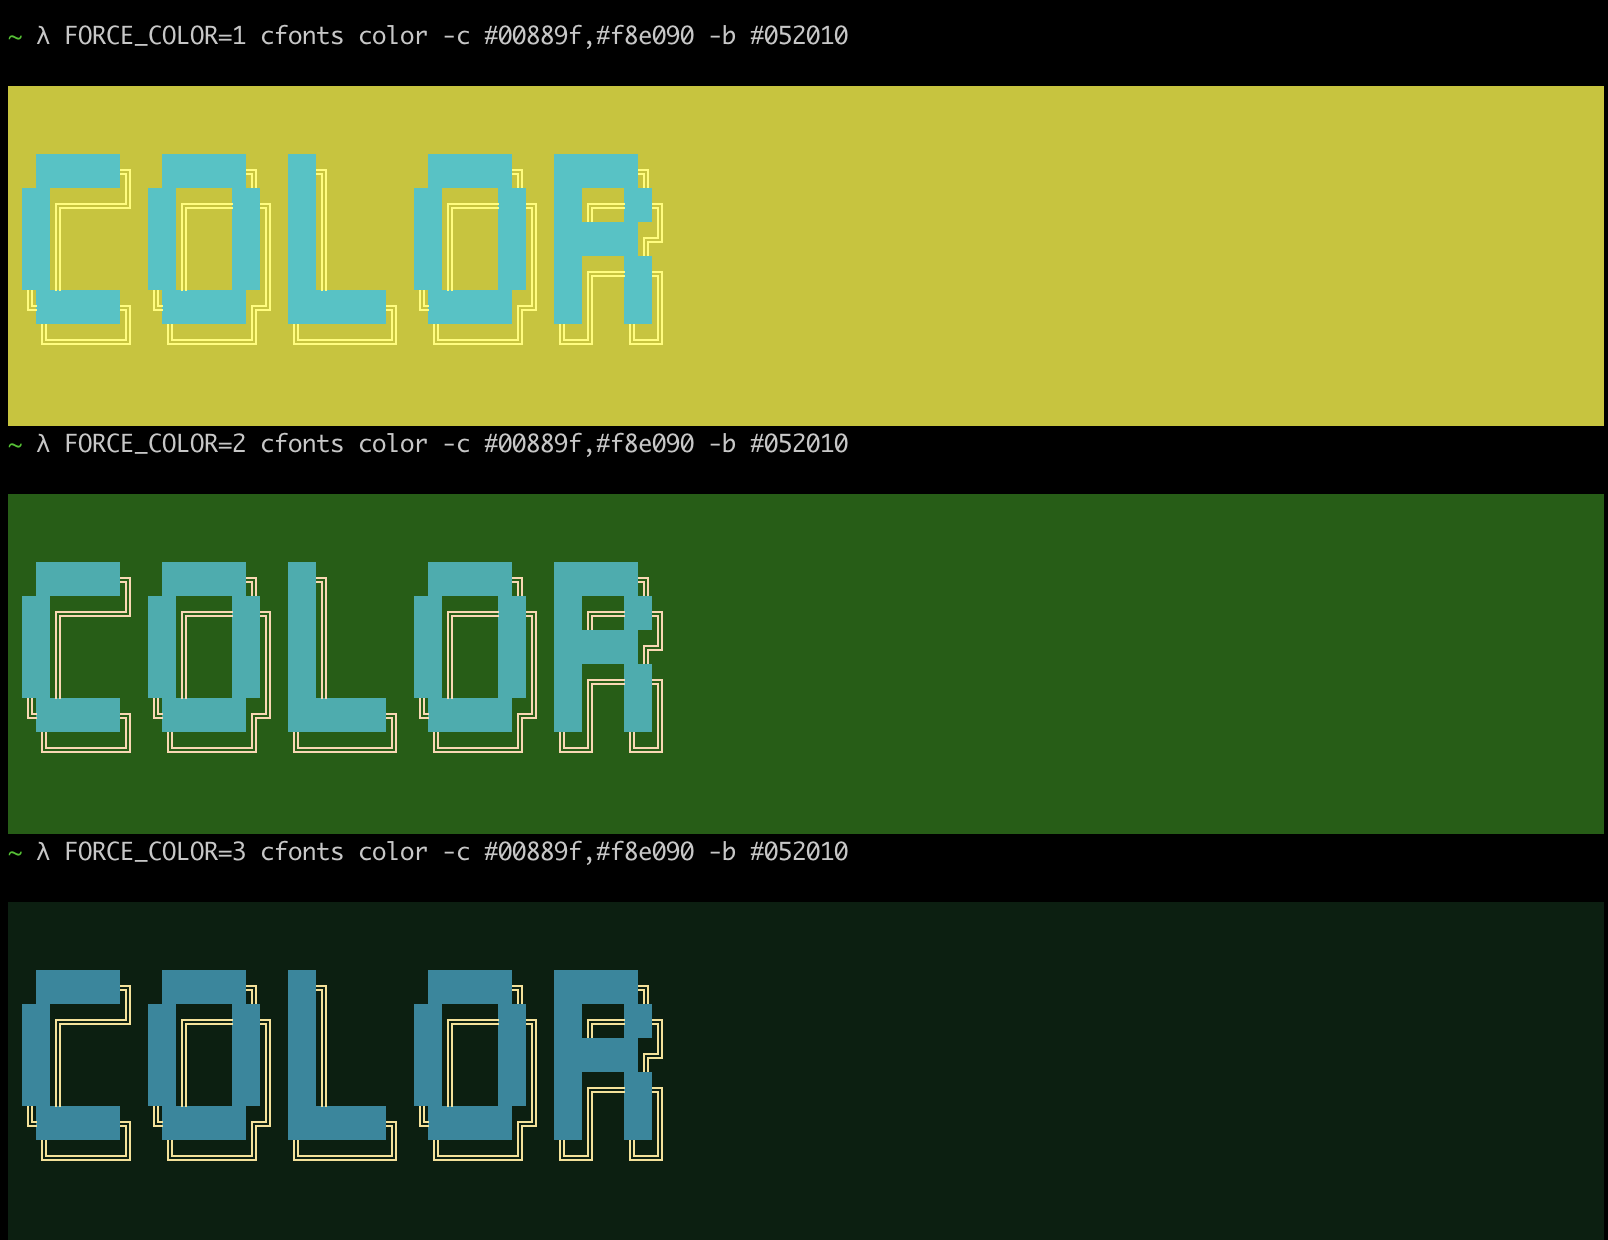 Color consistency via env vars